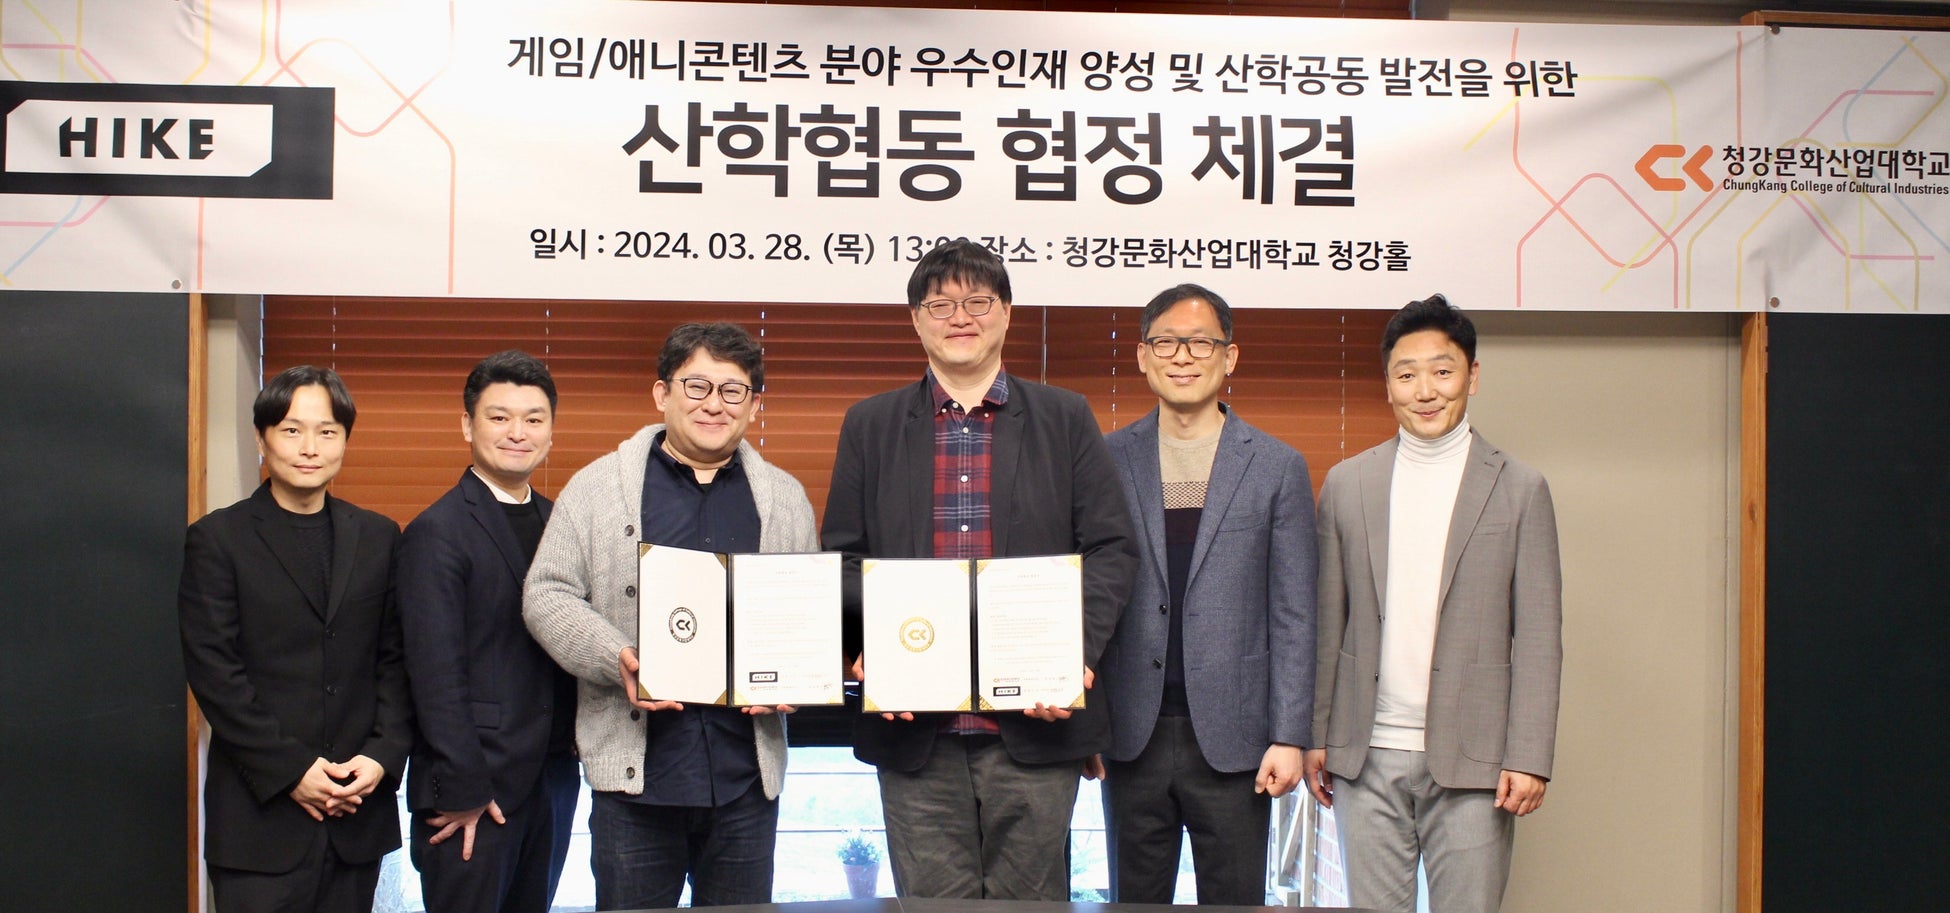 エンタメコンテンツ制作のHIKE、韓国・清江文化産業大学校と産学連携。教育プログラムの共同運営およびアニメーション・ゲーム領域の人材獲得につなげる